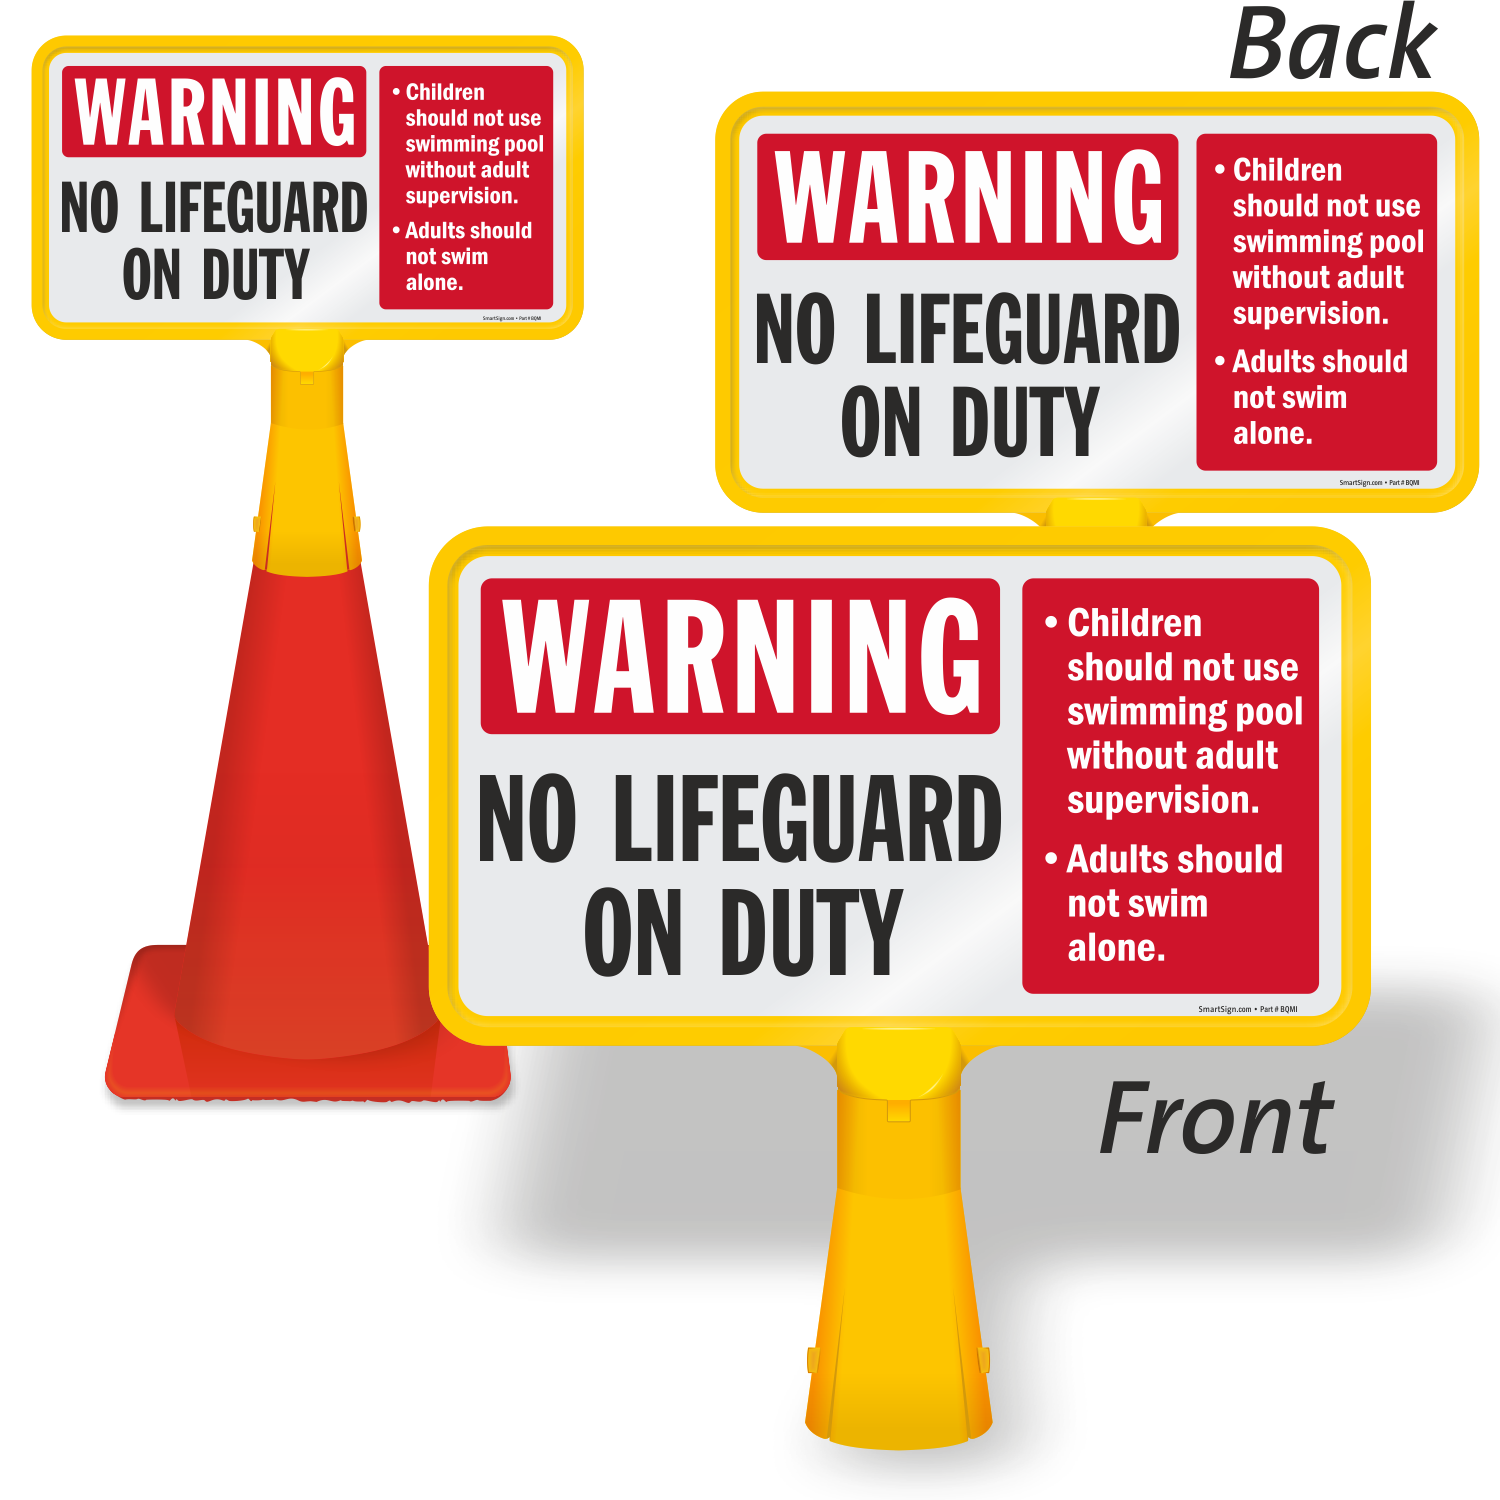 No Warning. No Lifeguard on Duty Call 911. Content warning перевод